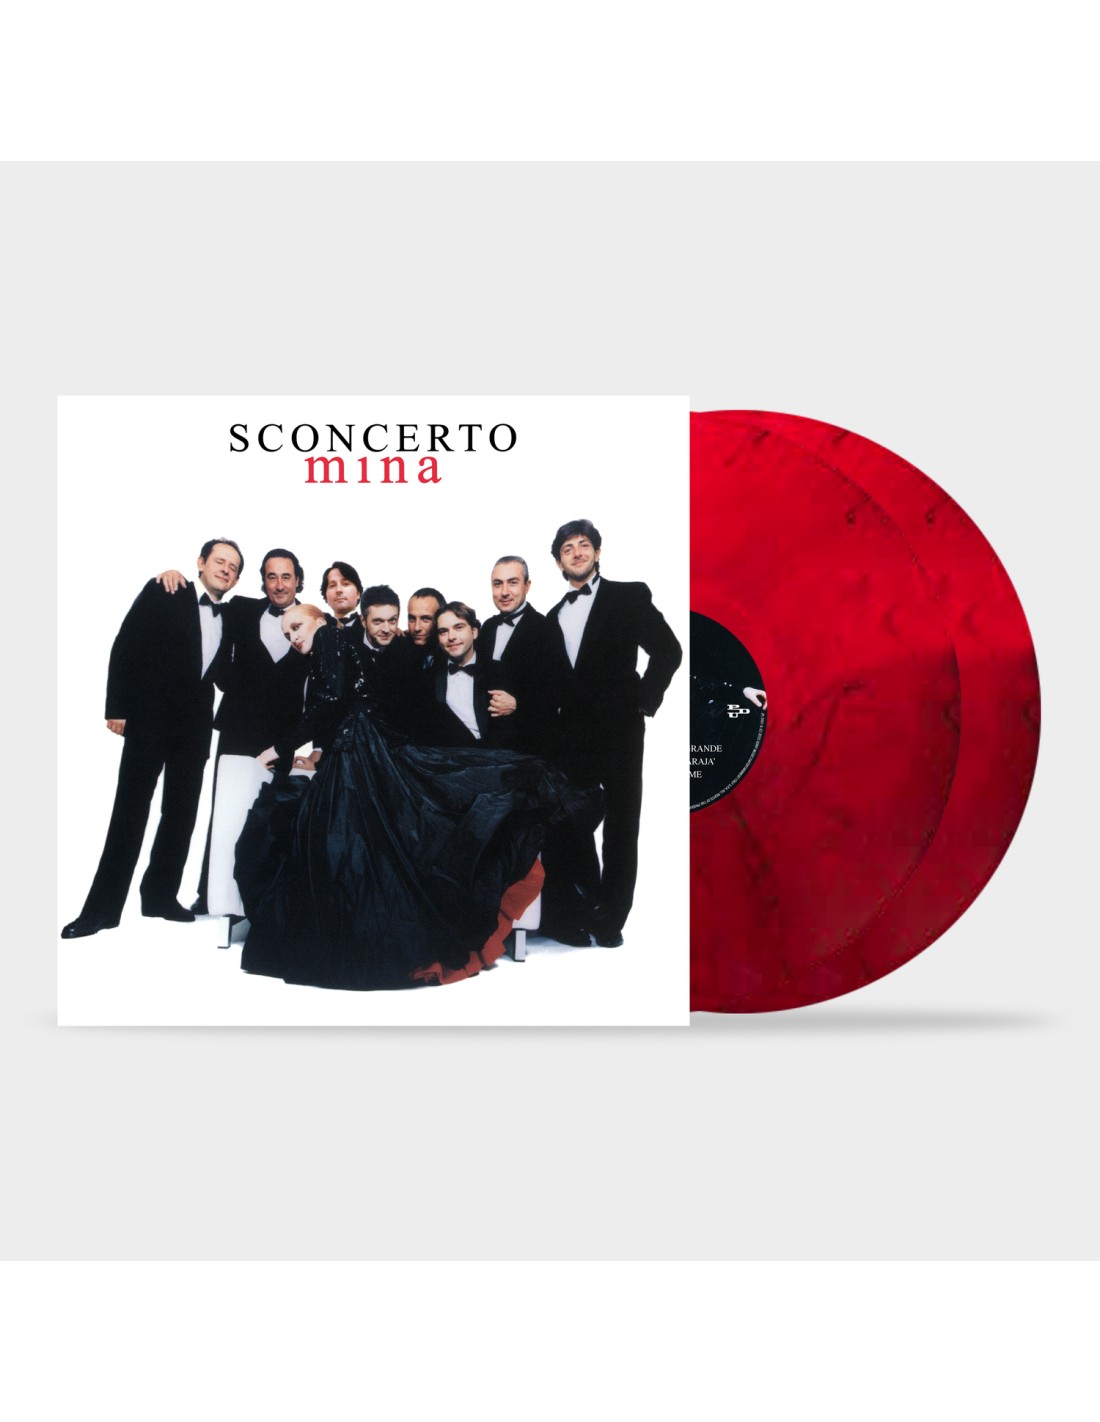 Mina Sconcerto 2 lp 180 Gr Vinyl Numbered Red With Black Limited Edt VINILE